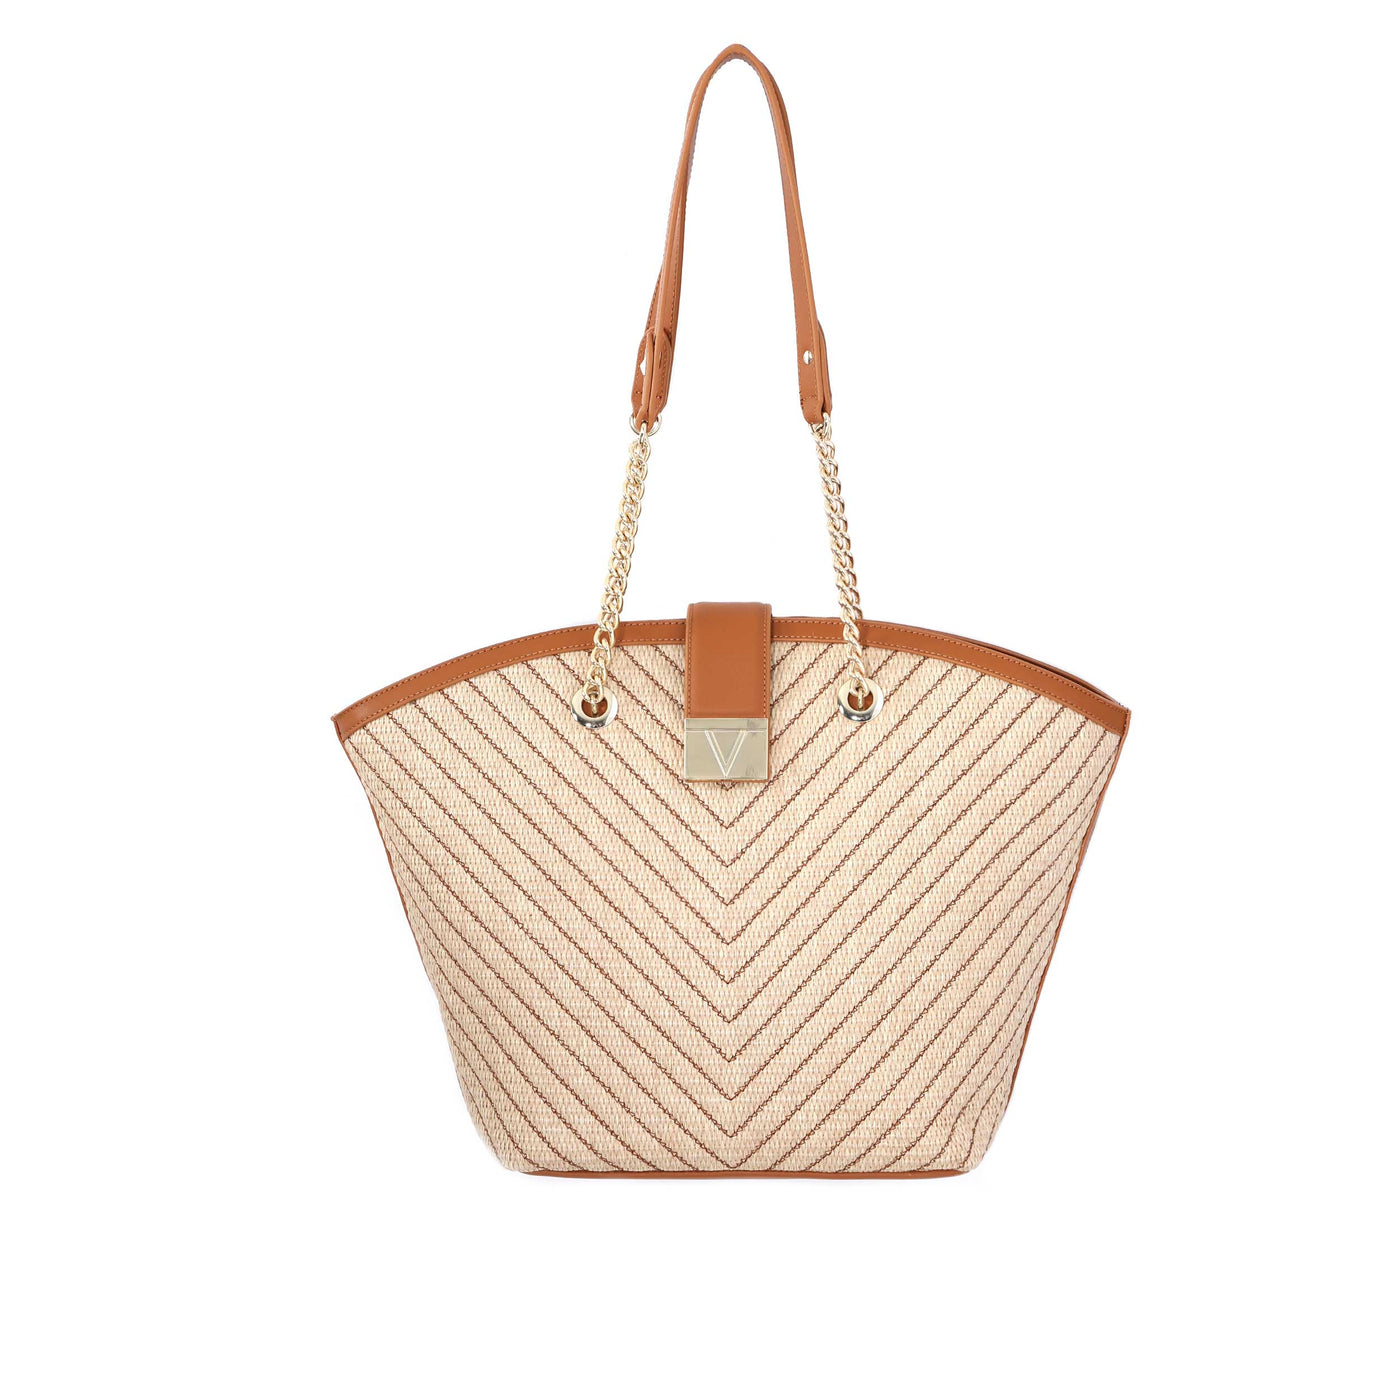 Valentino Bags Tribeca Ladies Shopper Bag in Natural & Tan